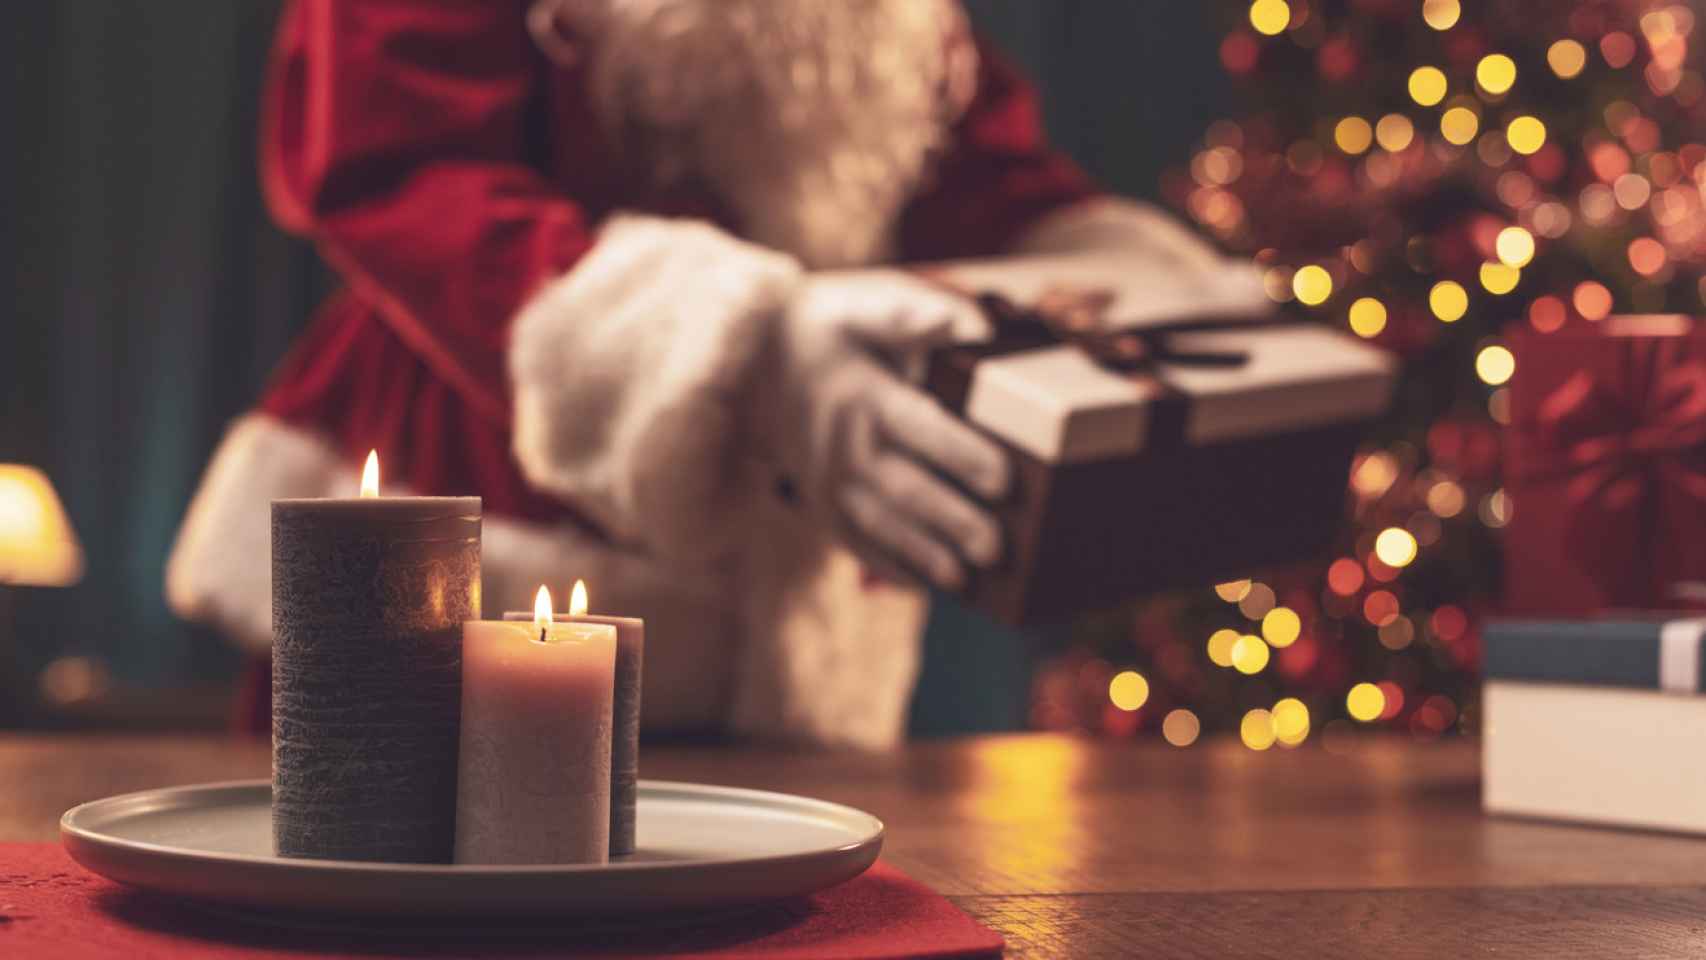 Unas velas aromatizan una casa donde Santa Claus está dejando regalos. iStock